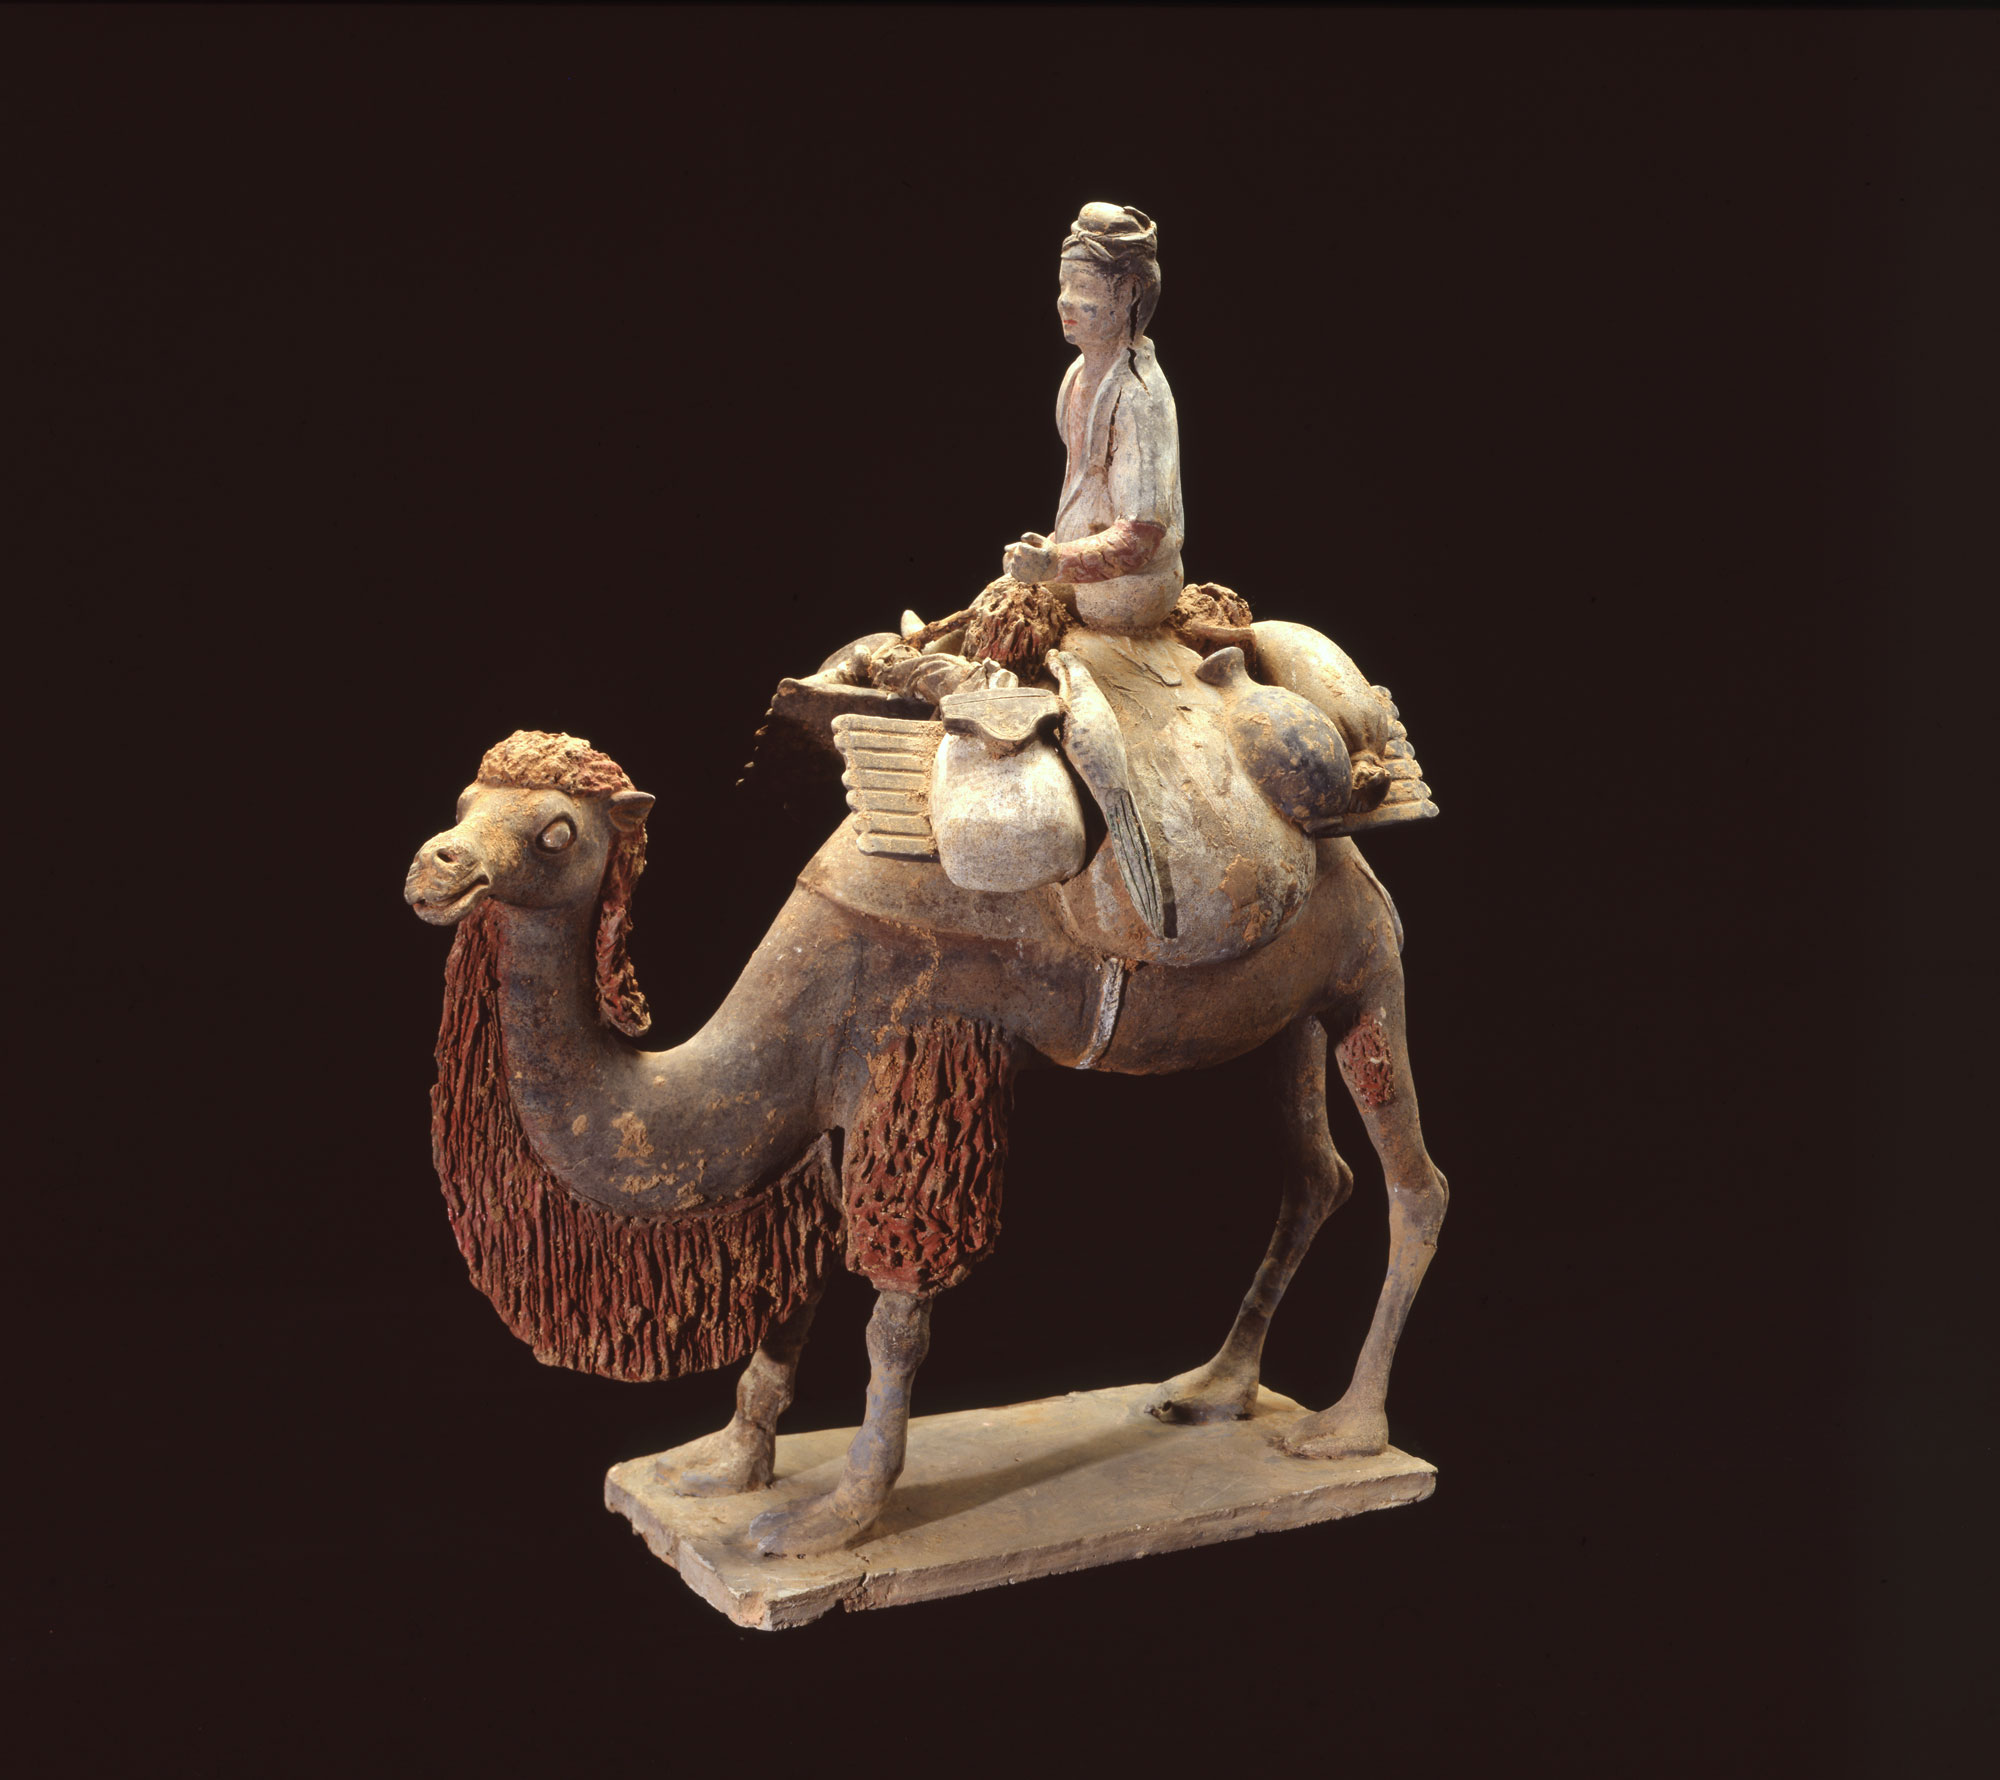 Statuette funéraire (mingqi) d'un caravanier sur un chameau de Bactriane n°Inventaire MA6721 (Chine du nord, Milieu du 7e siècle, Dynastie Tang (618-907). Prêt du Musée de Guimet.